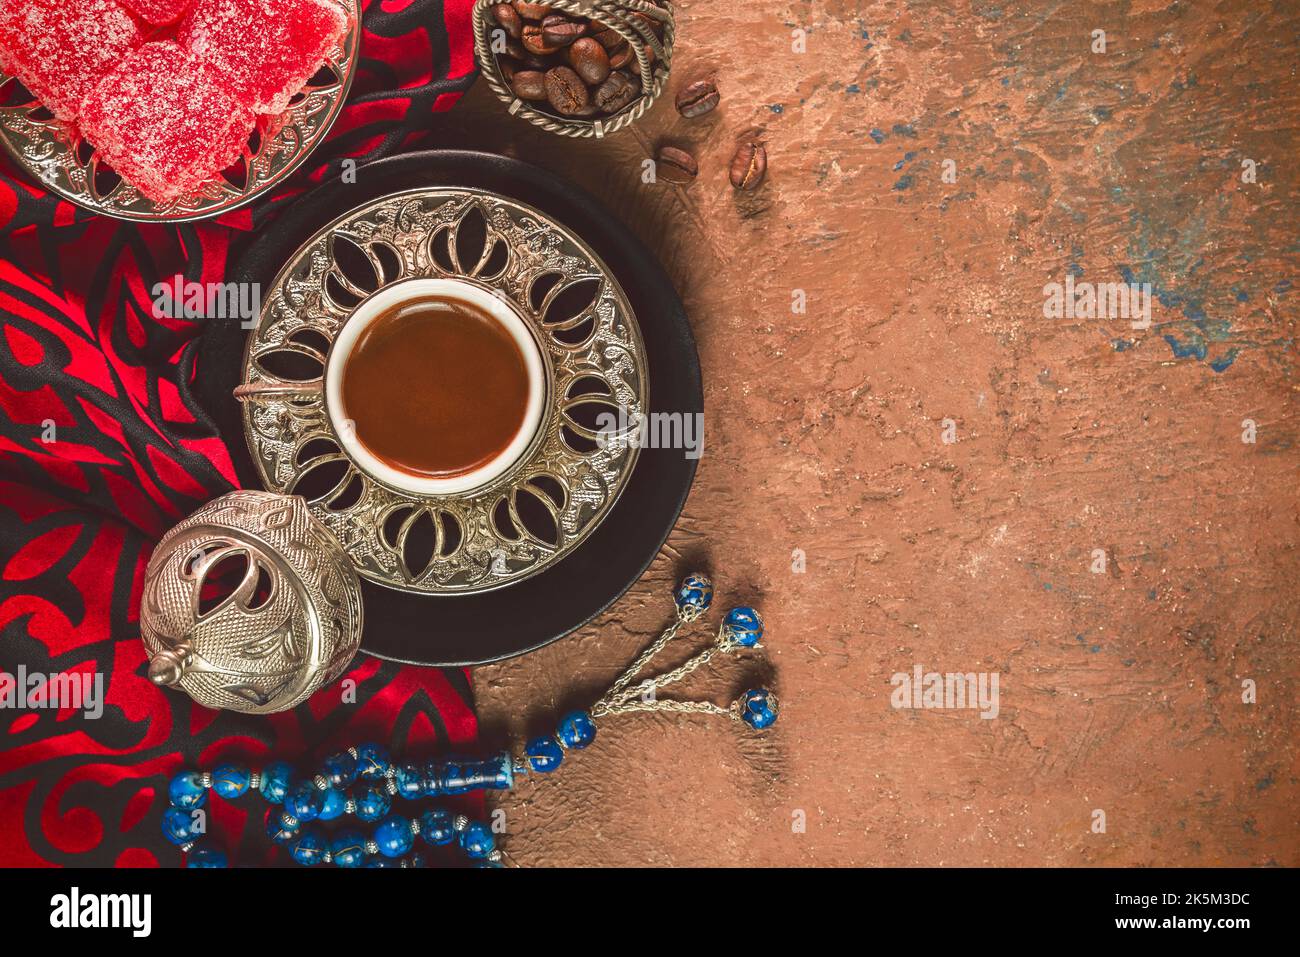 Tasse de café turc placée avec des grains de café rôtis, des délices turcs et des perles rosaires sur fond rustique. Vue de dessus avec espace de copie. Banque D'Images